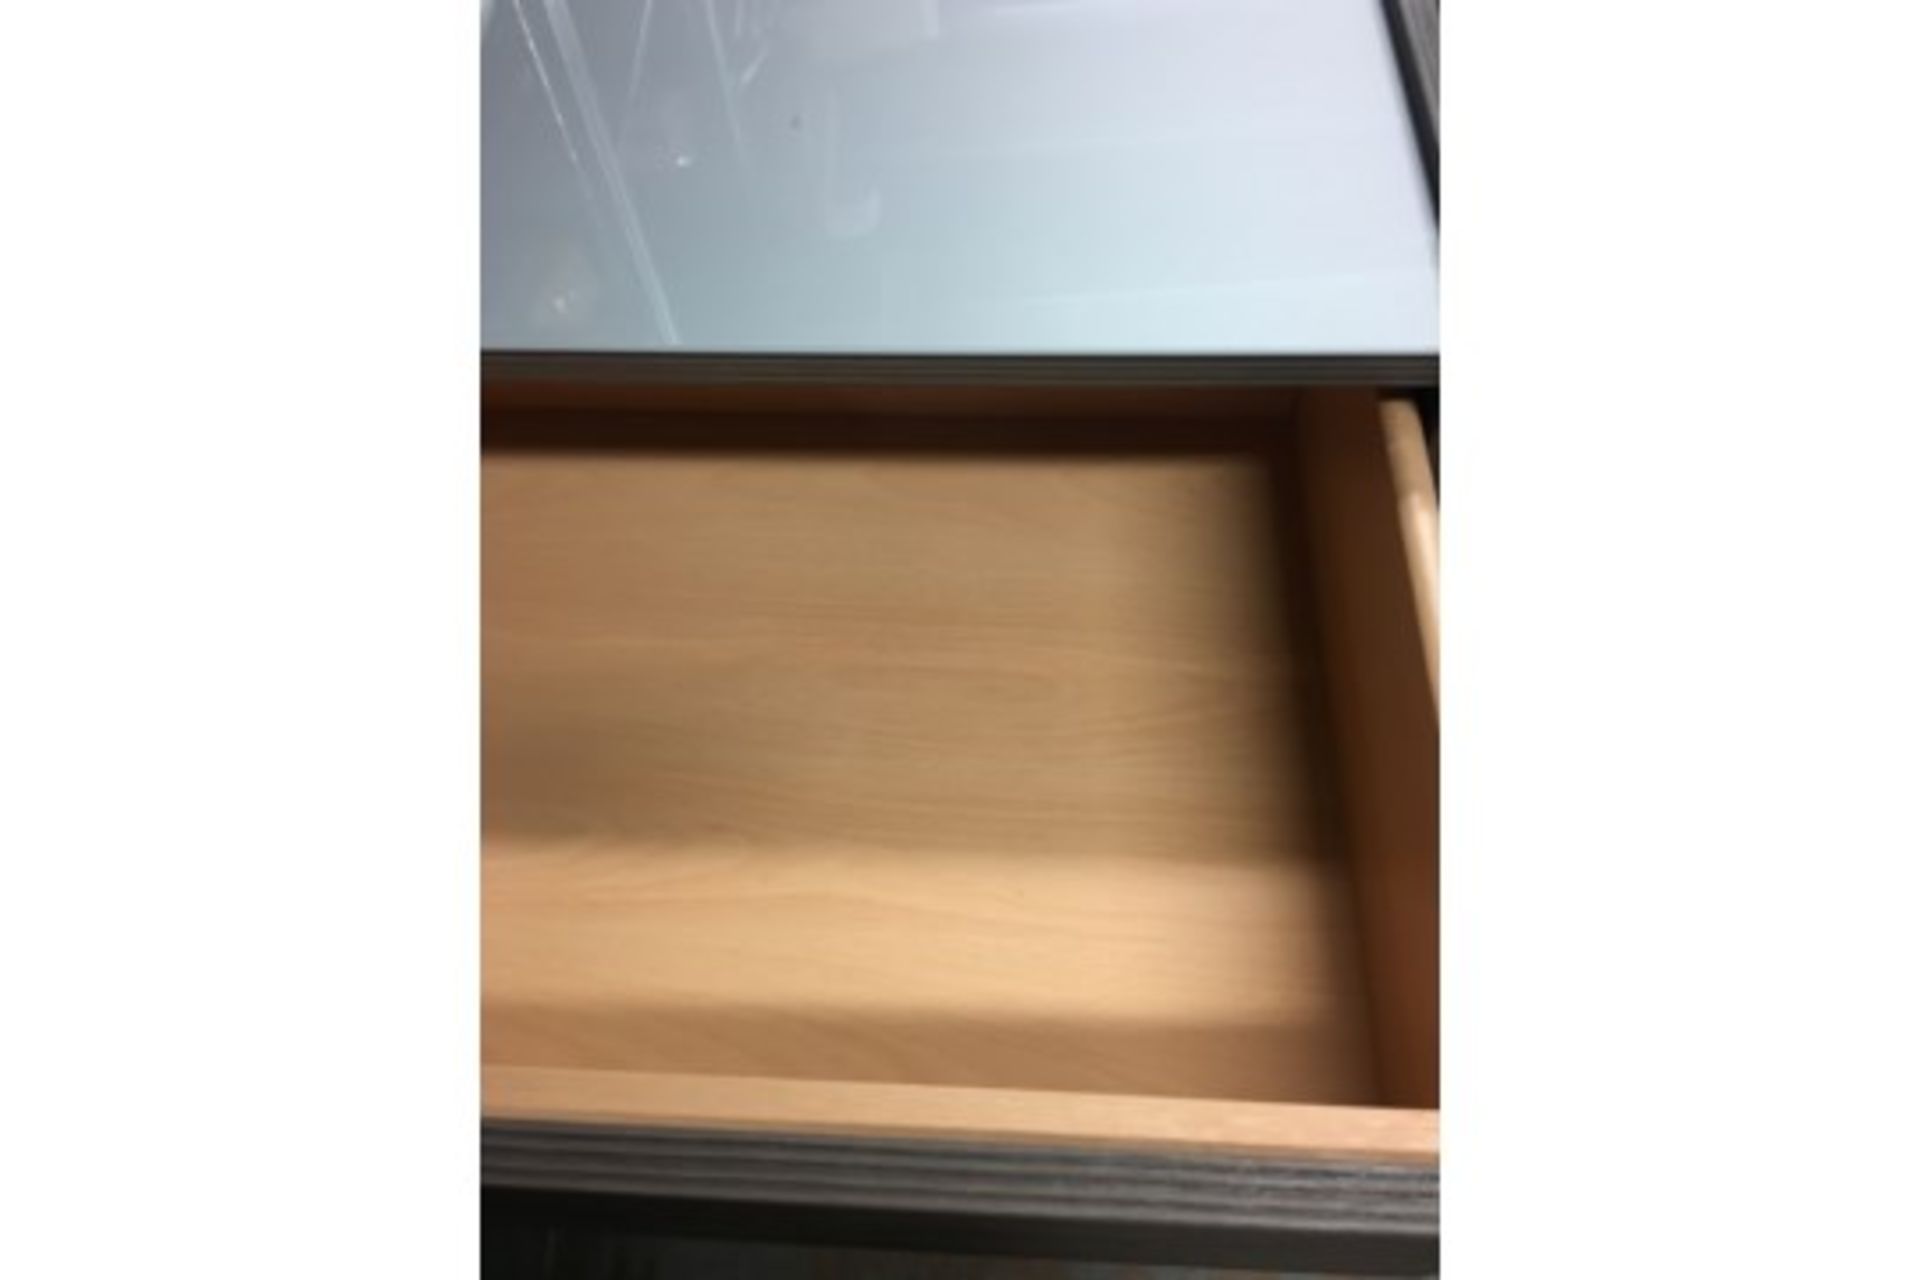 Ex display dark brown 3 drawer side board - Image 2 of 3